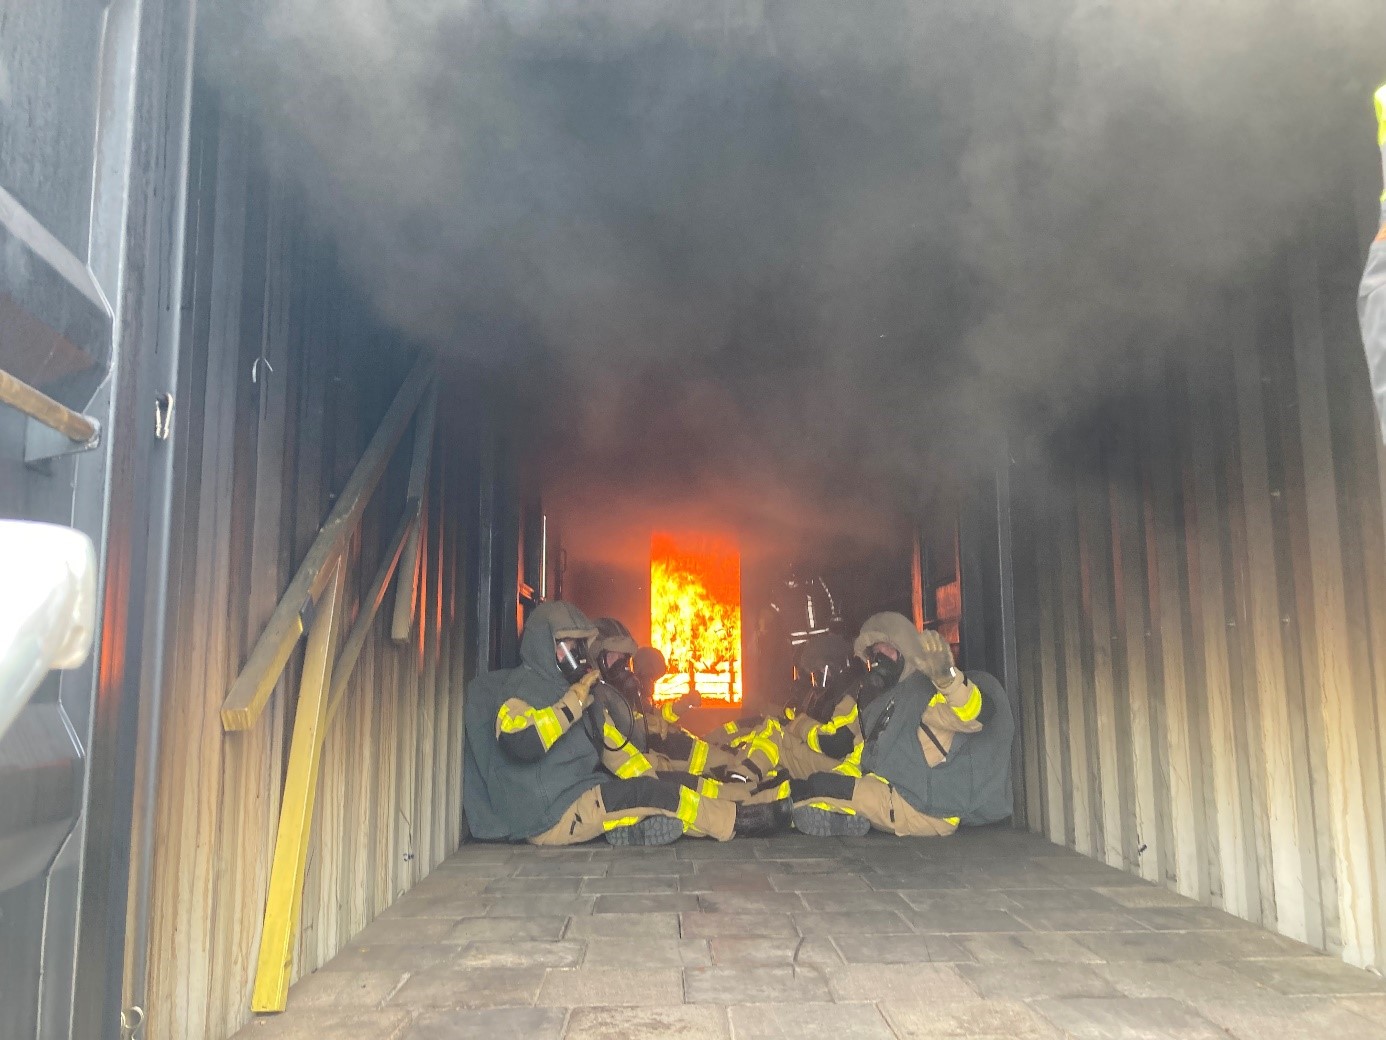 Feuerwehrleute sitzen in voller Schutzkleidung und mit Schutzmasken auf dem Boden eines Containers. Hinter ihnen brennt ein Feuer. Über ihnen steht starker Rauch. 